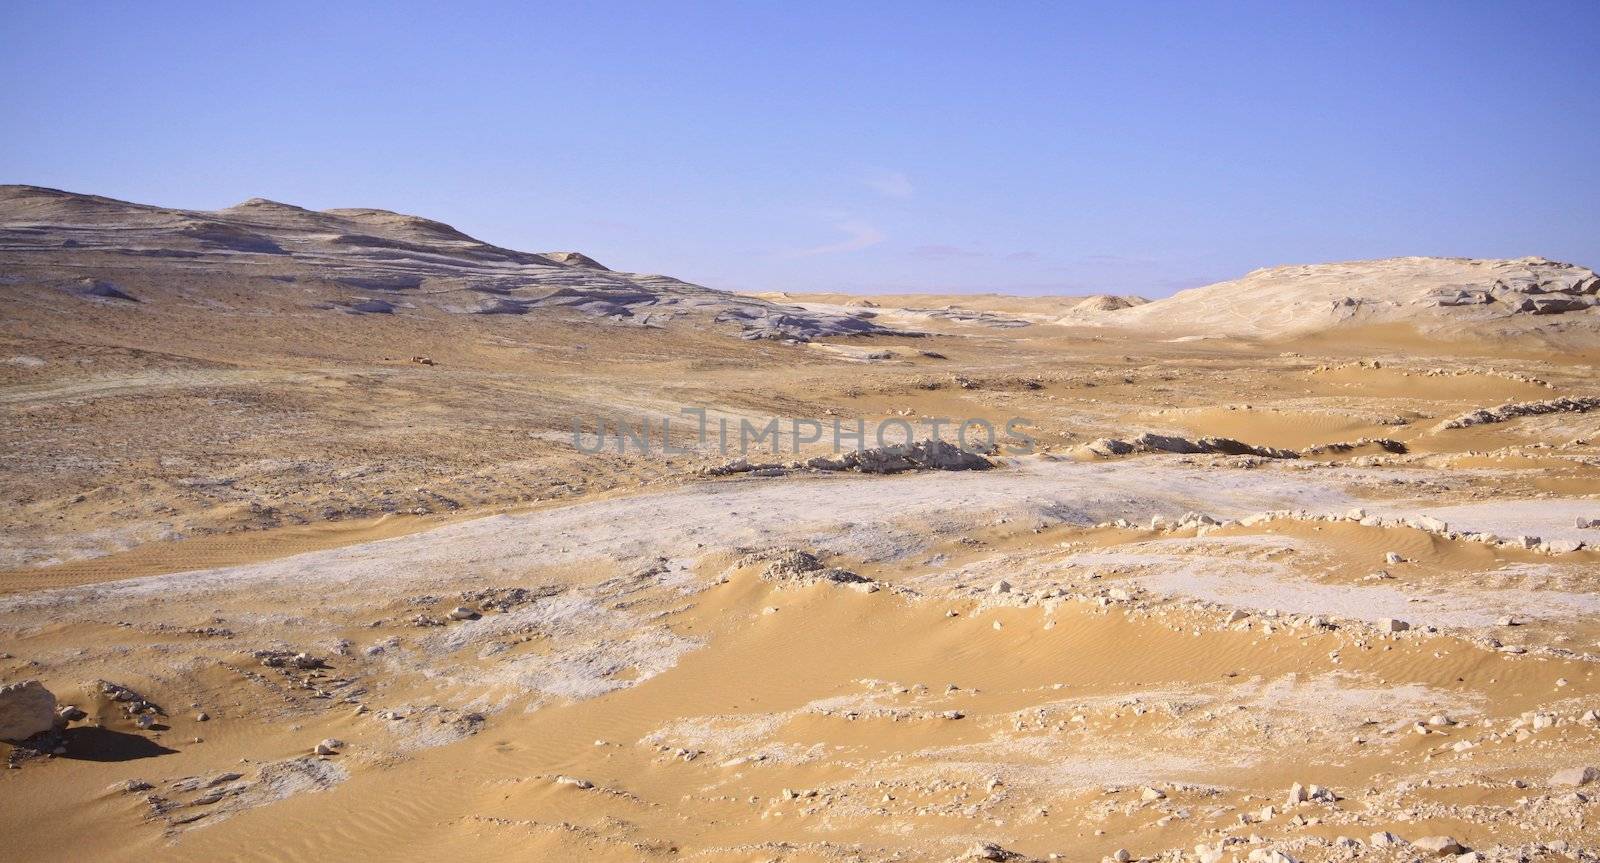  White Desert, Egypt  by jnerad